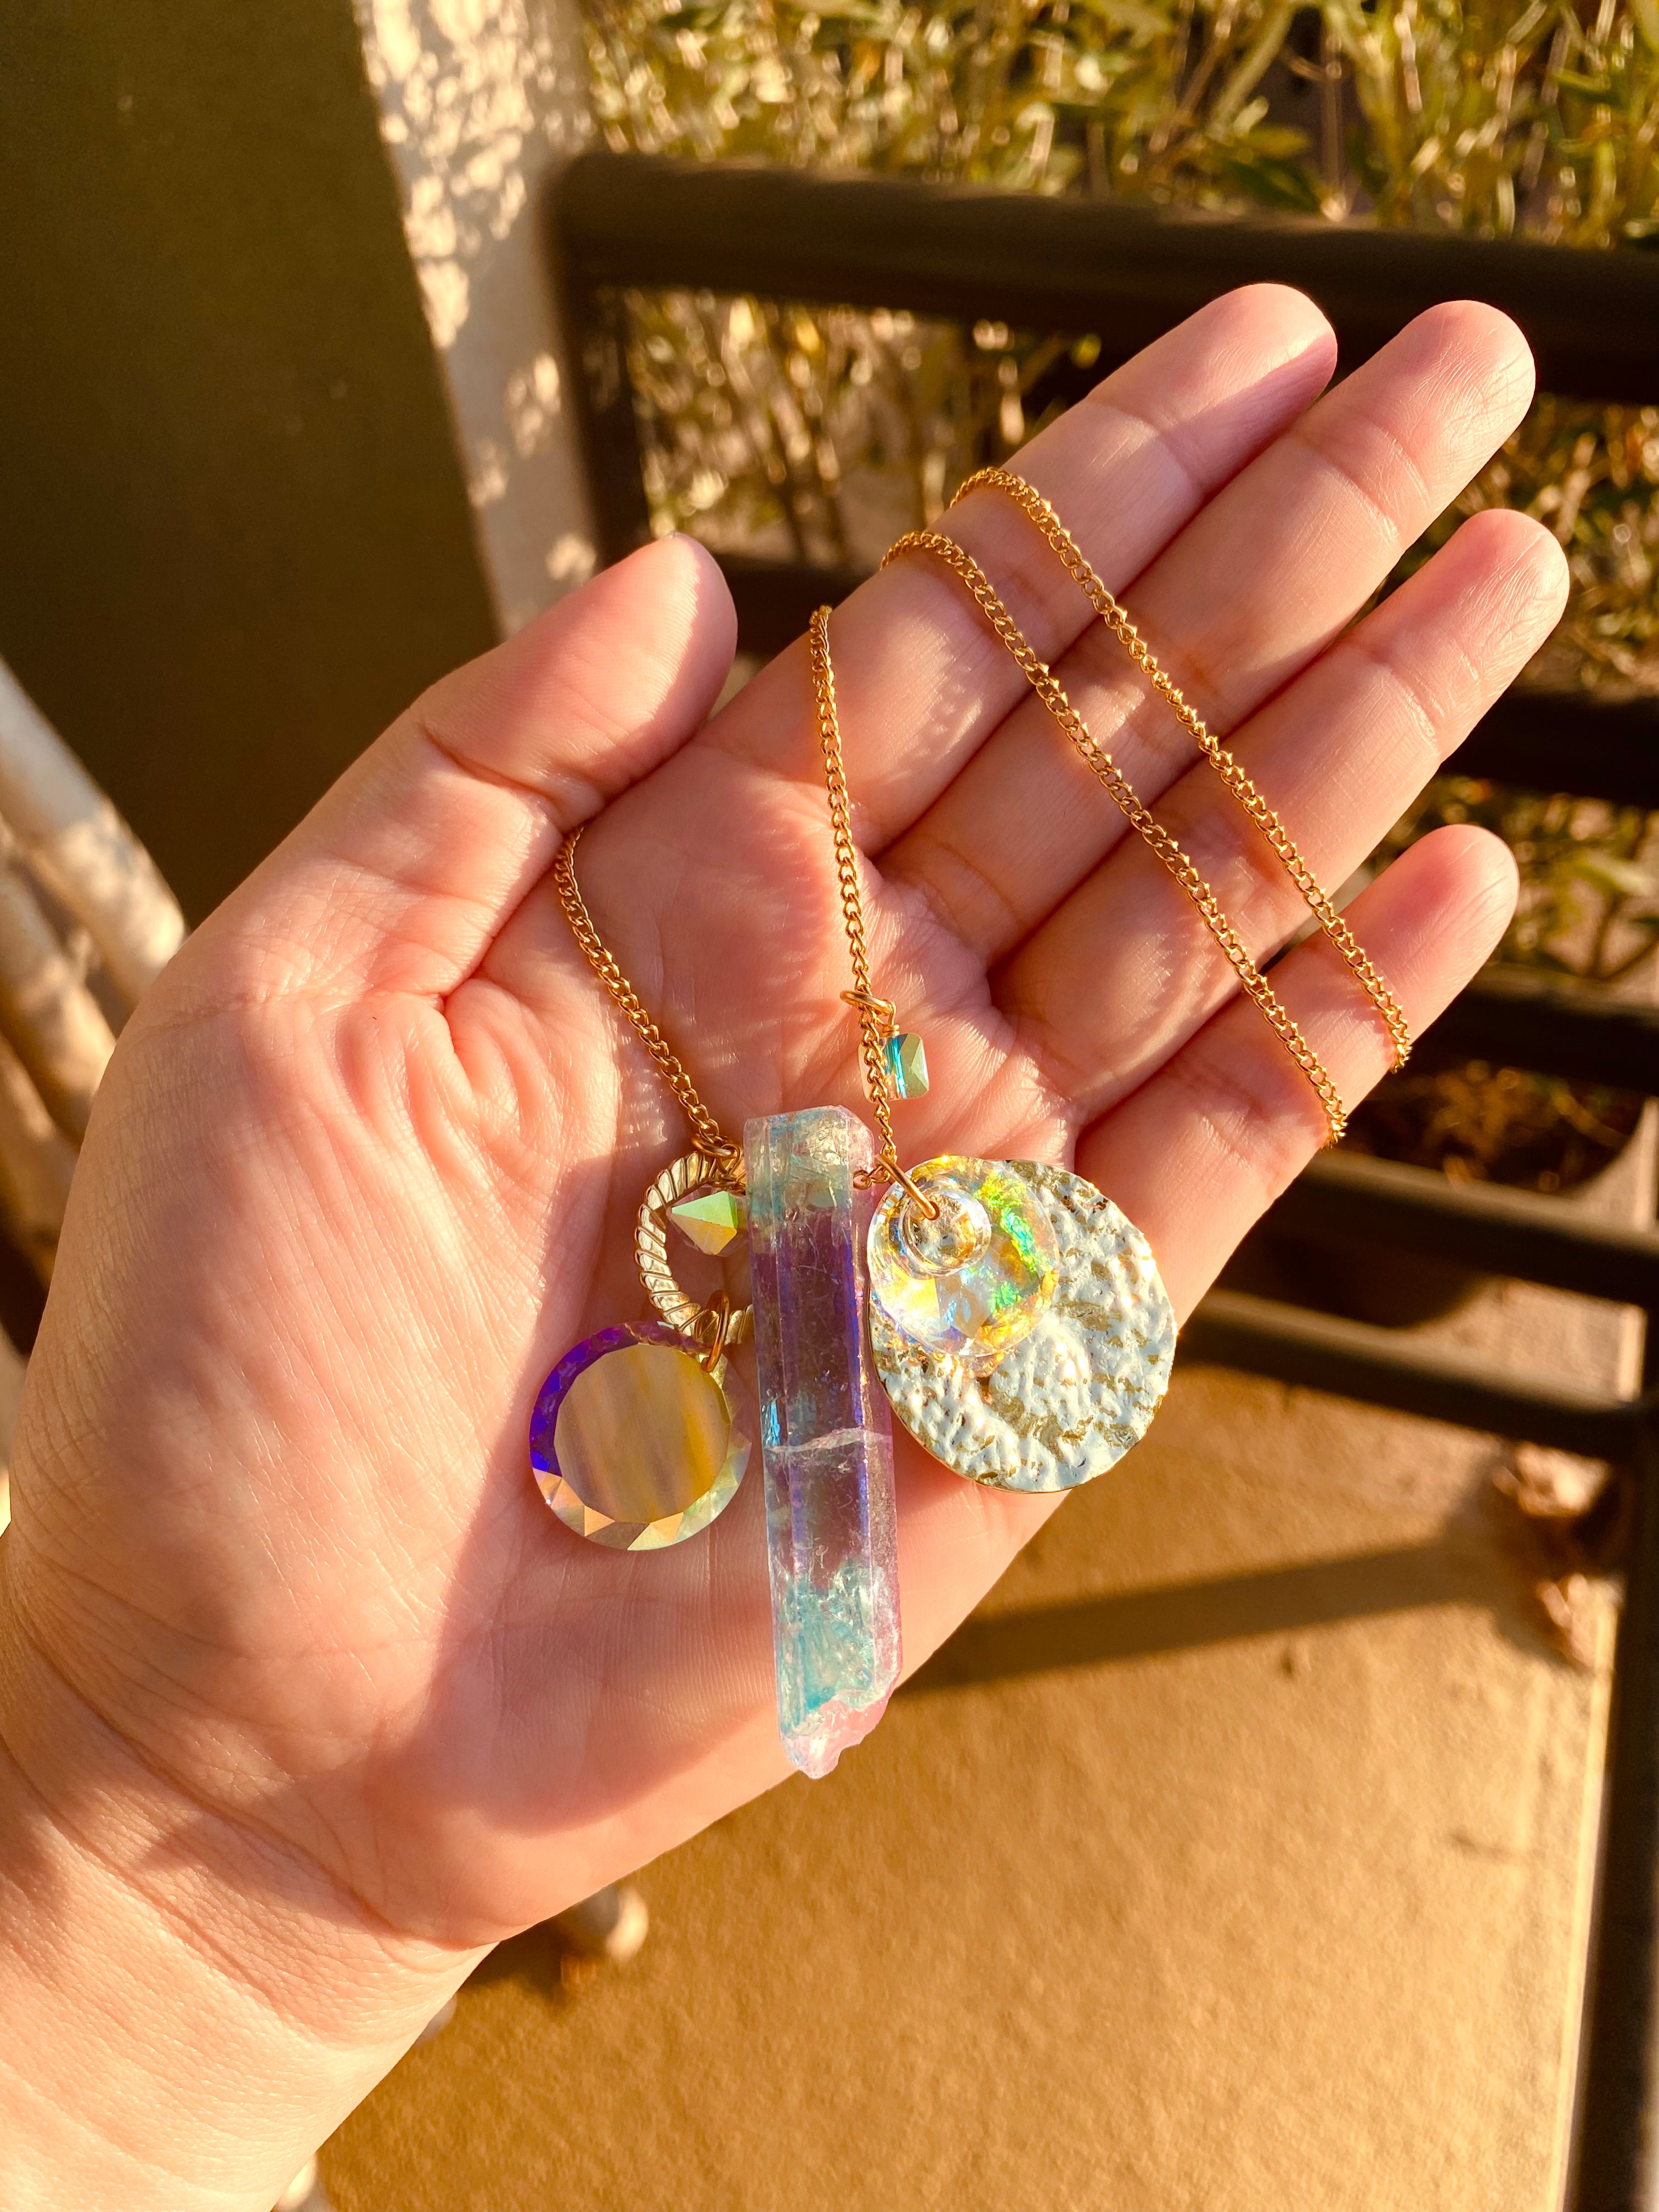 Angel aura quartz necklace by Jenny Dayco 7